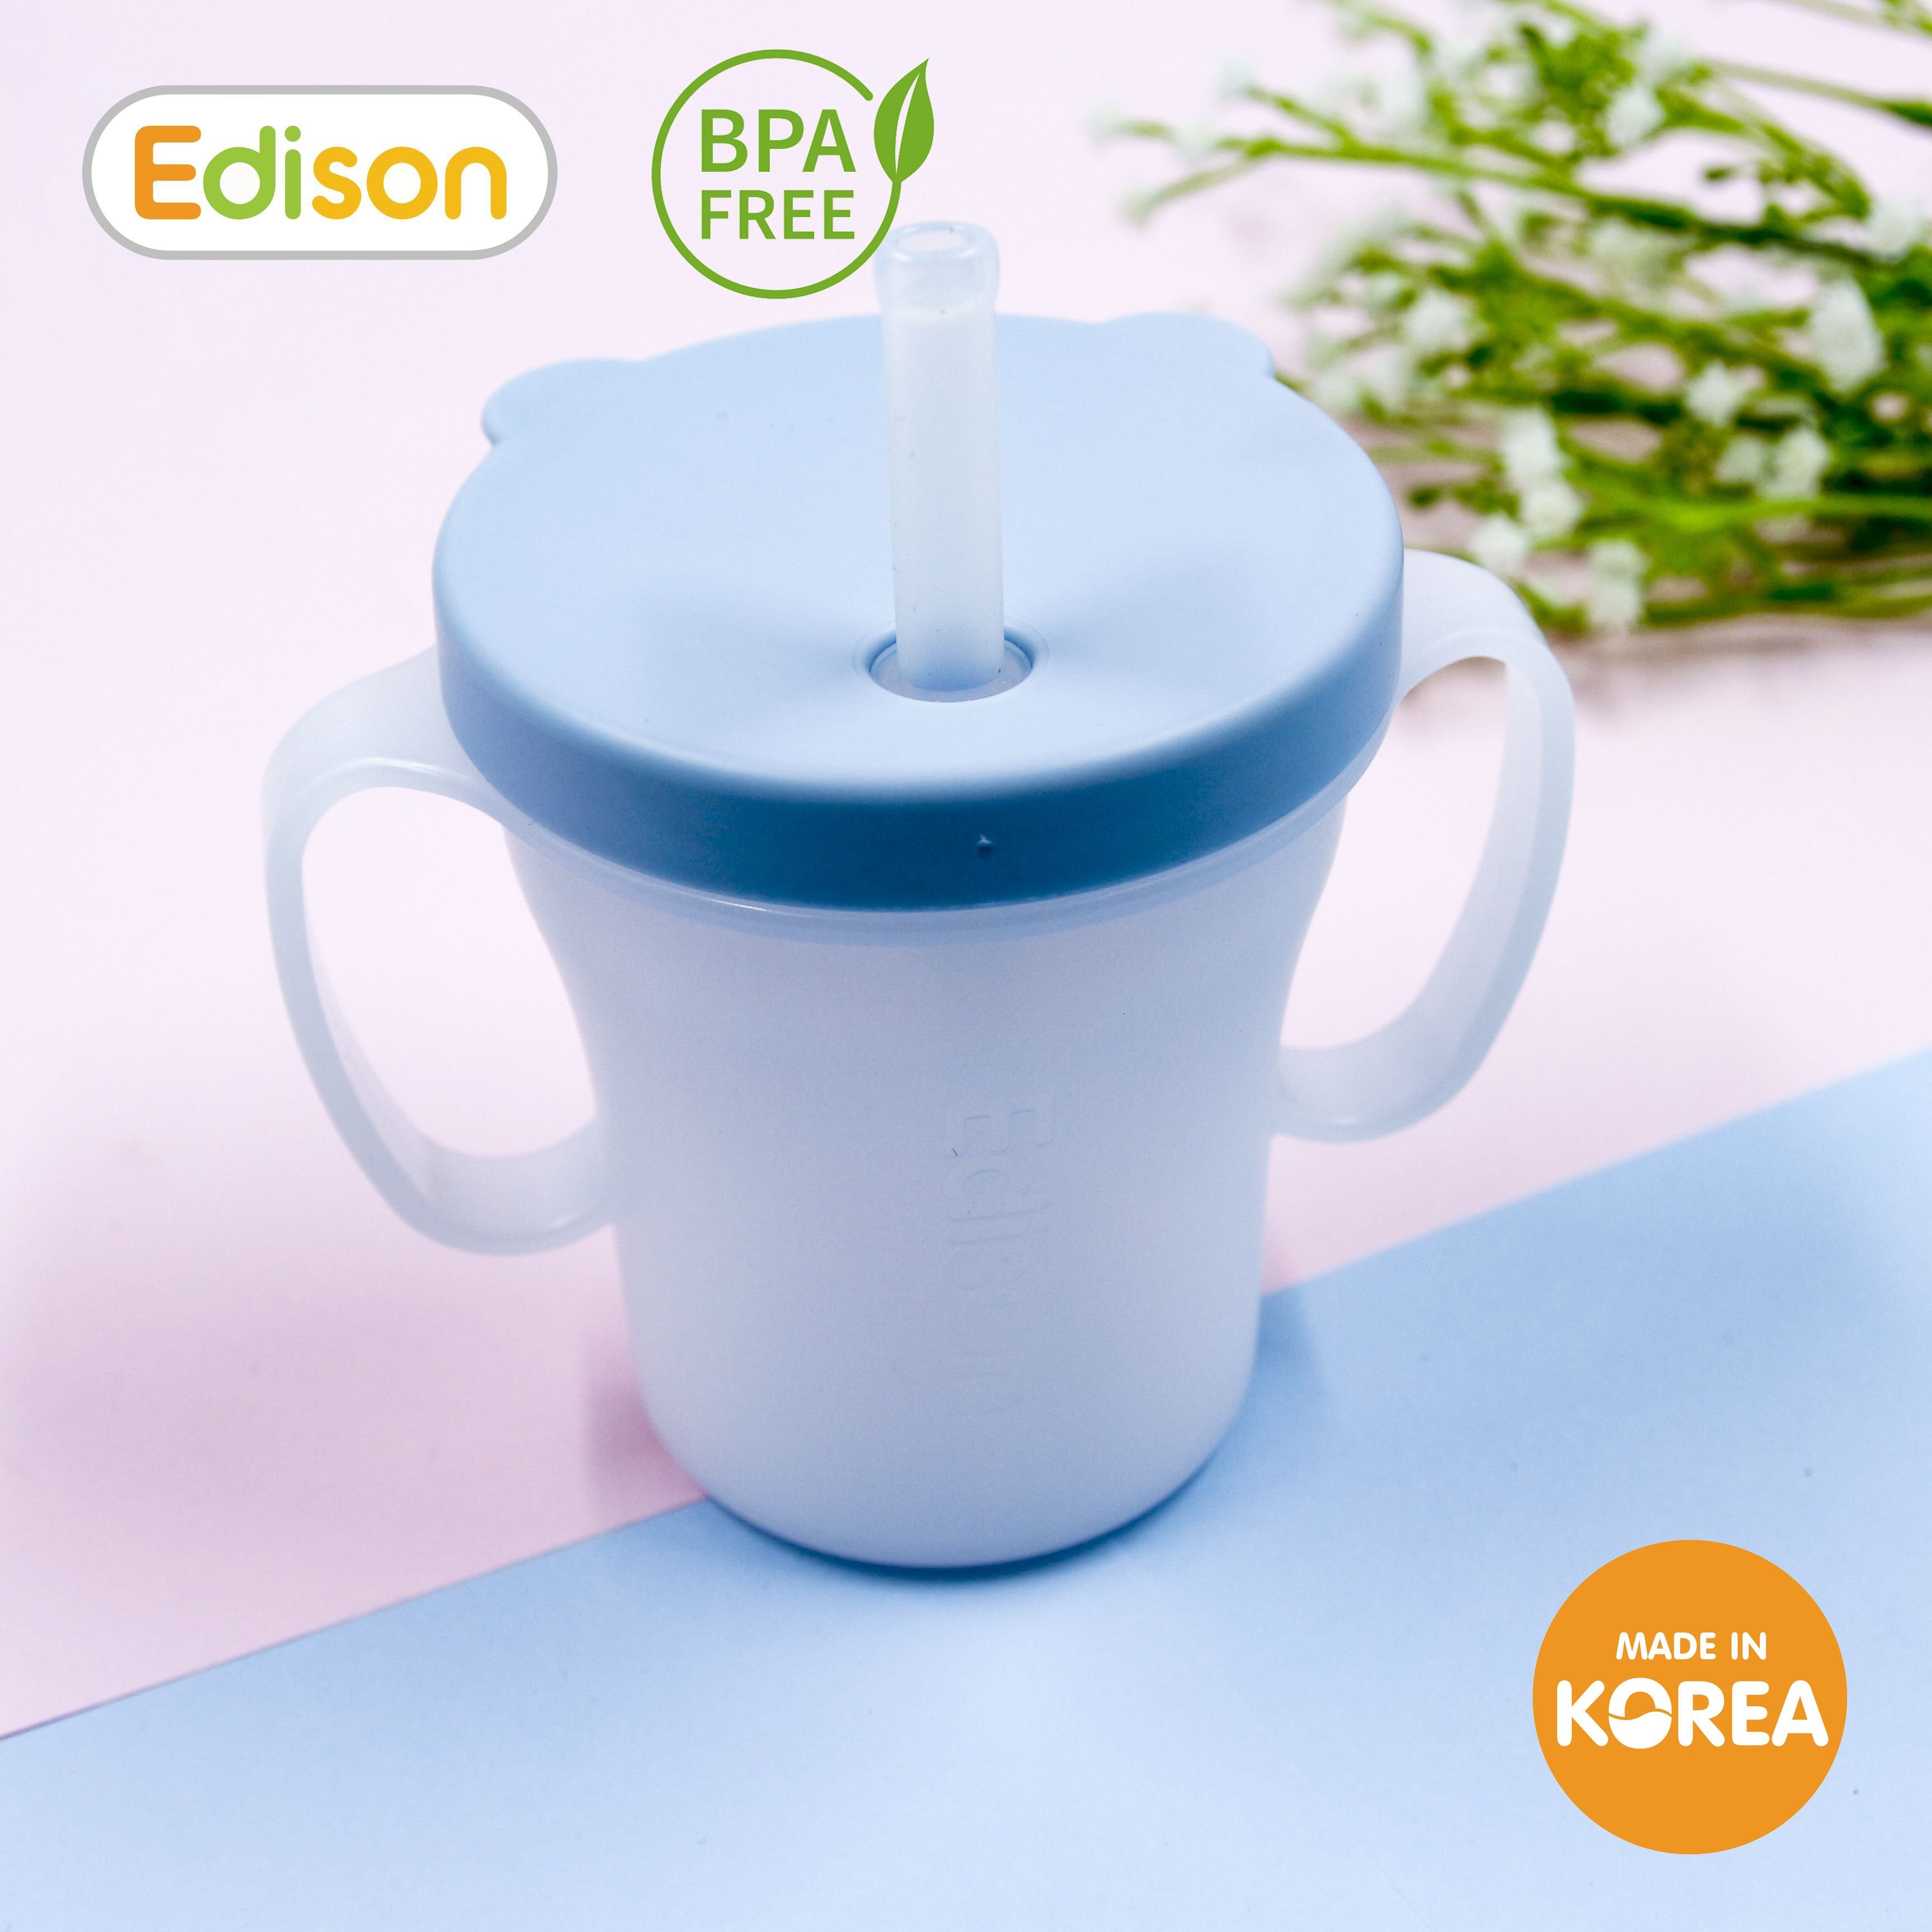 Cốc tập uống 3 giai đoạn Edison Hàn Quốc có ống hút chống rò rỉ và tay cầm